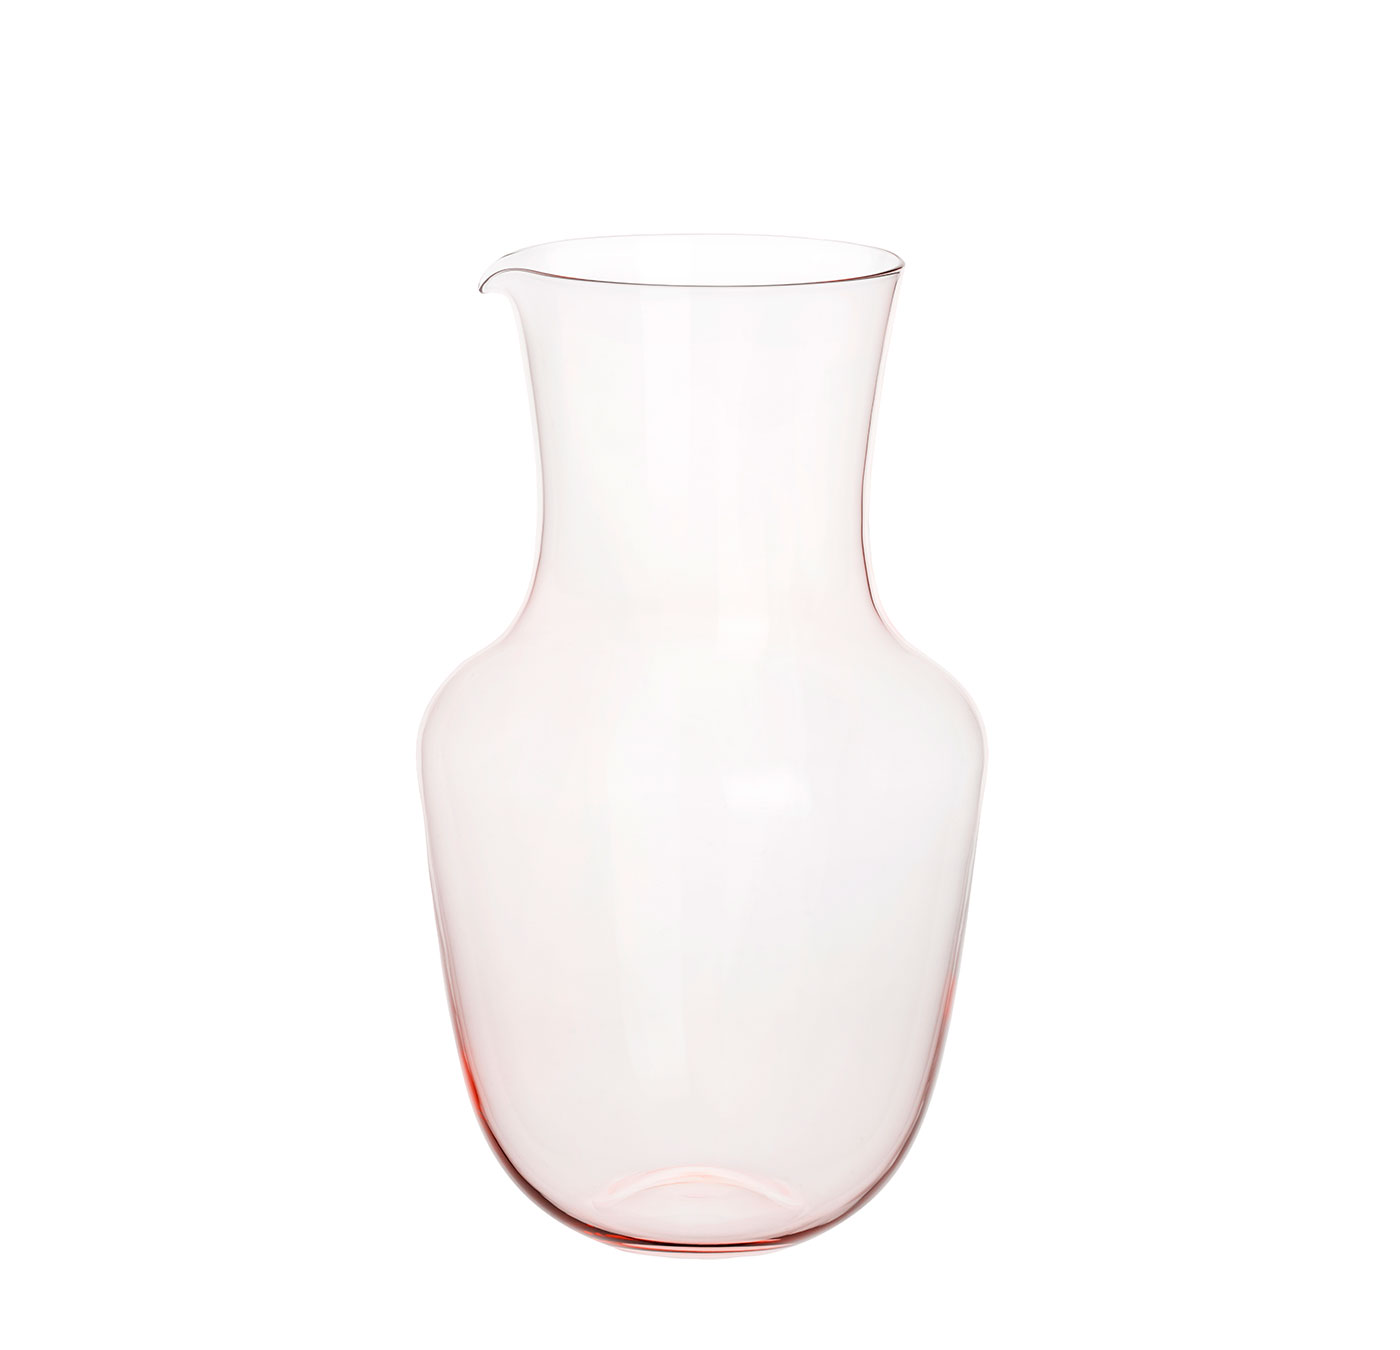 TS267FA Water pitcher 04 rosalin